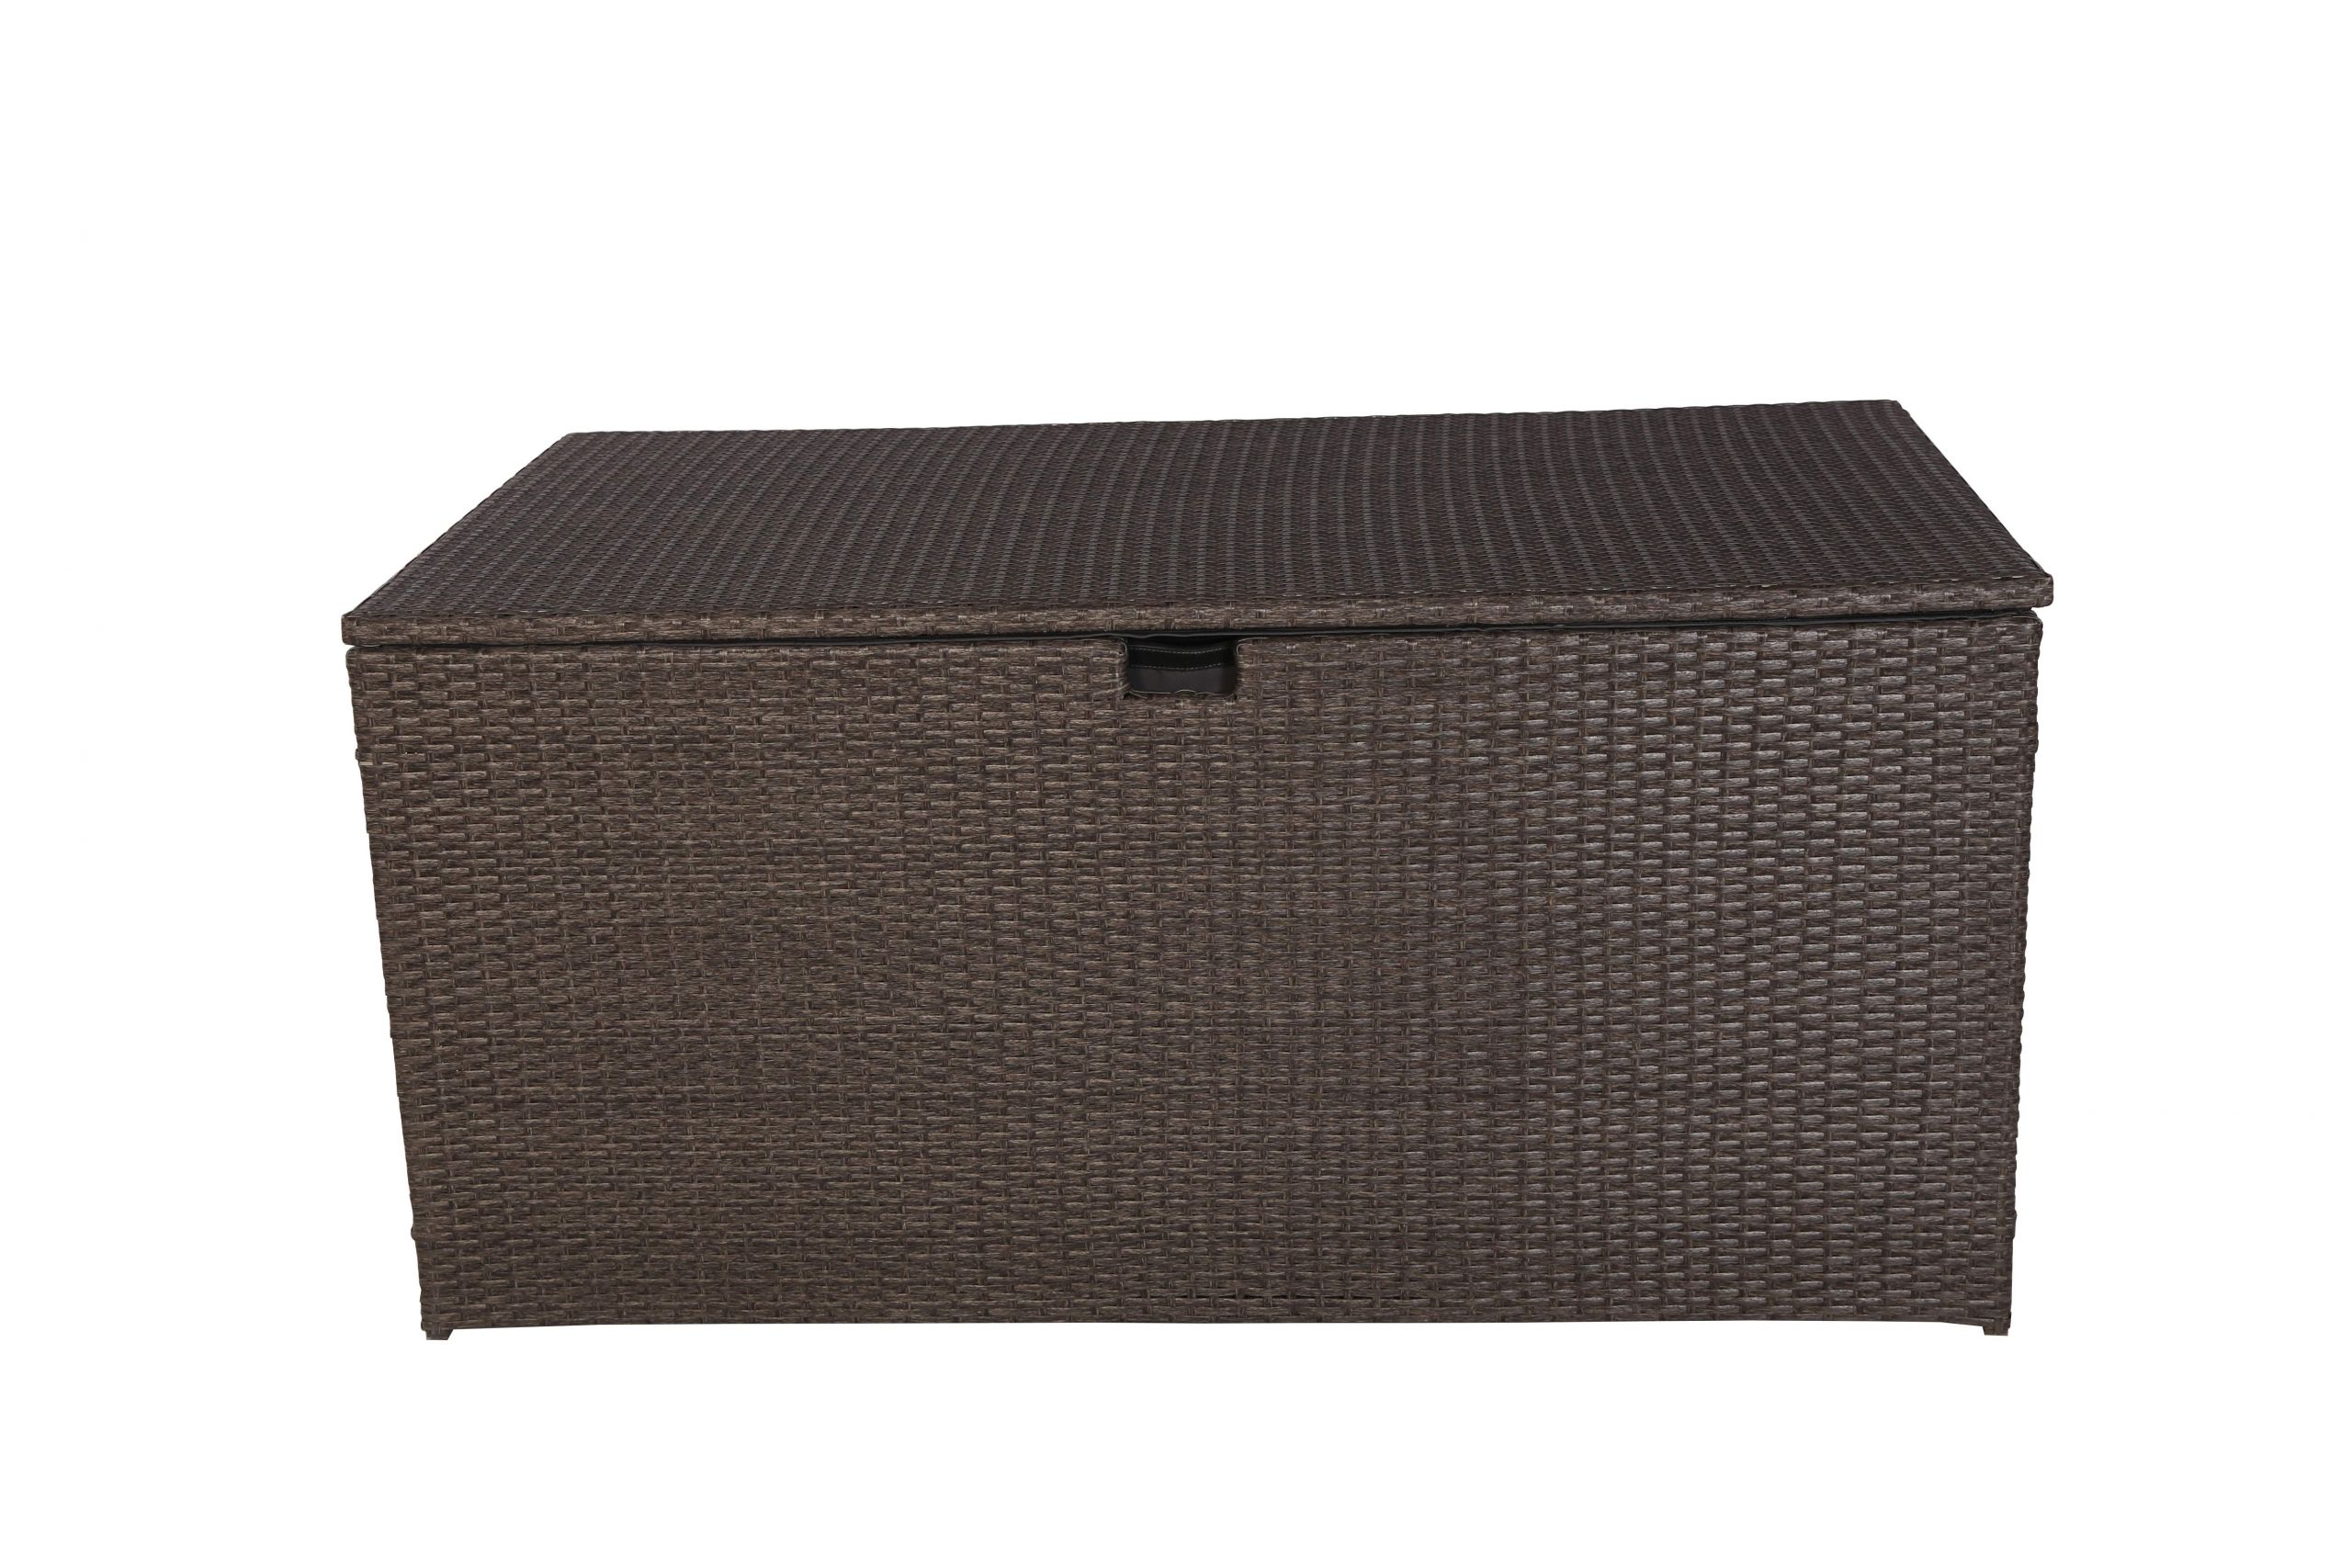 Garten Auflagenbox Das Beste Von Milos Polyrattan Auflagenbox Kissenbox Braun 145x80x60cm